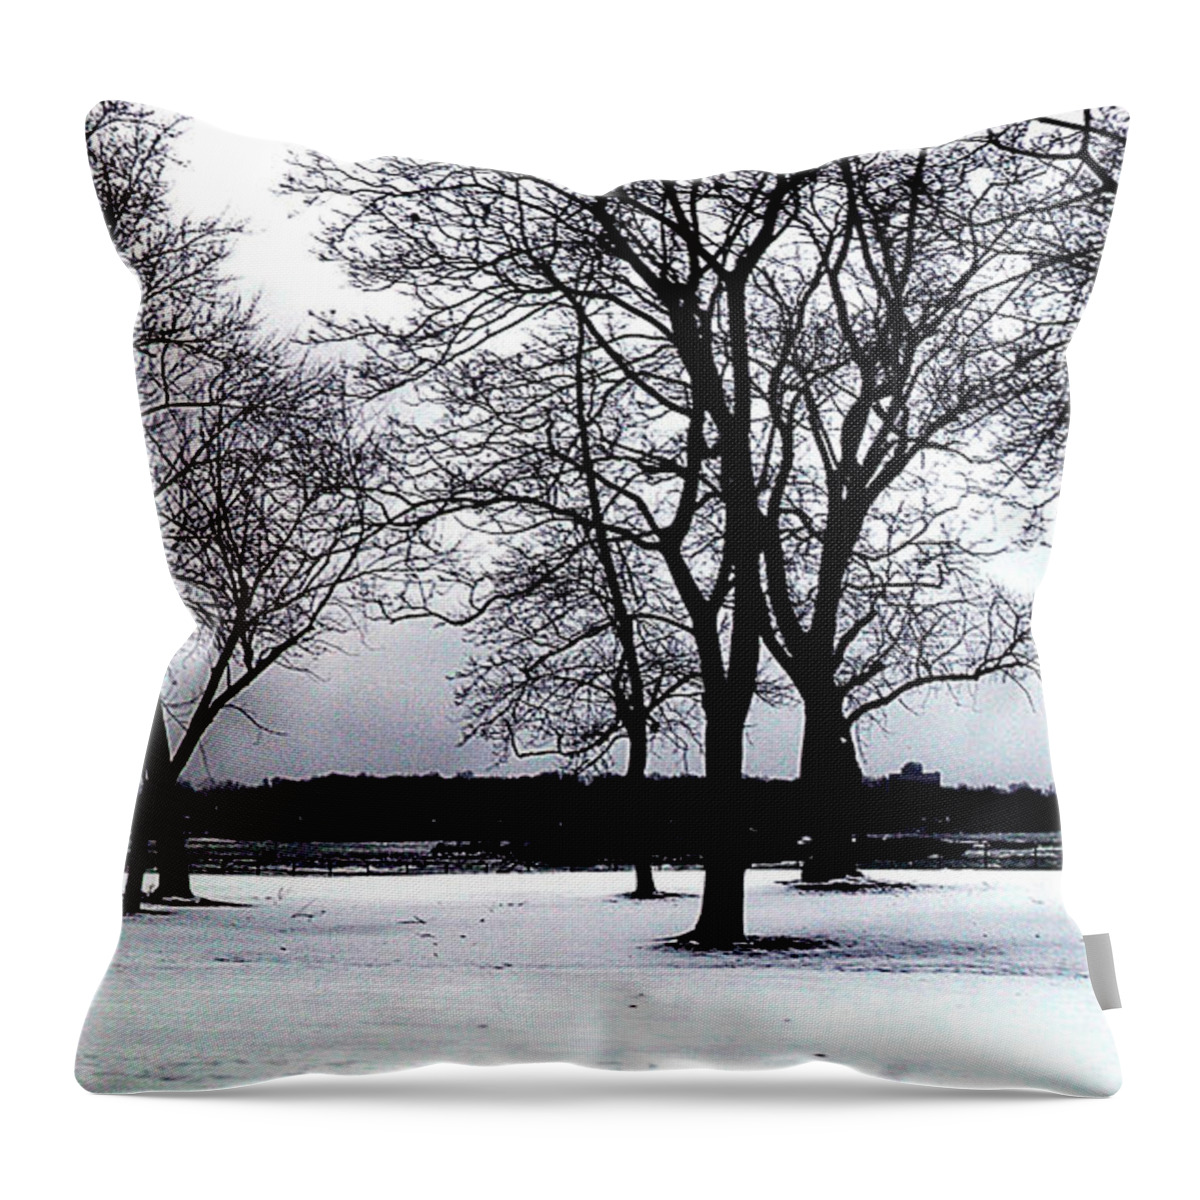 Landscape Throw Pillow featuring the photograph Niagara Winter Beauty by Iris Gelbart